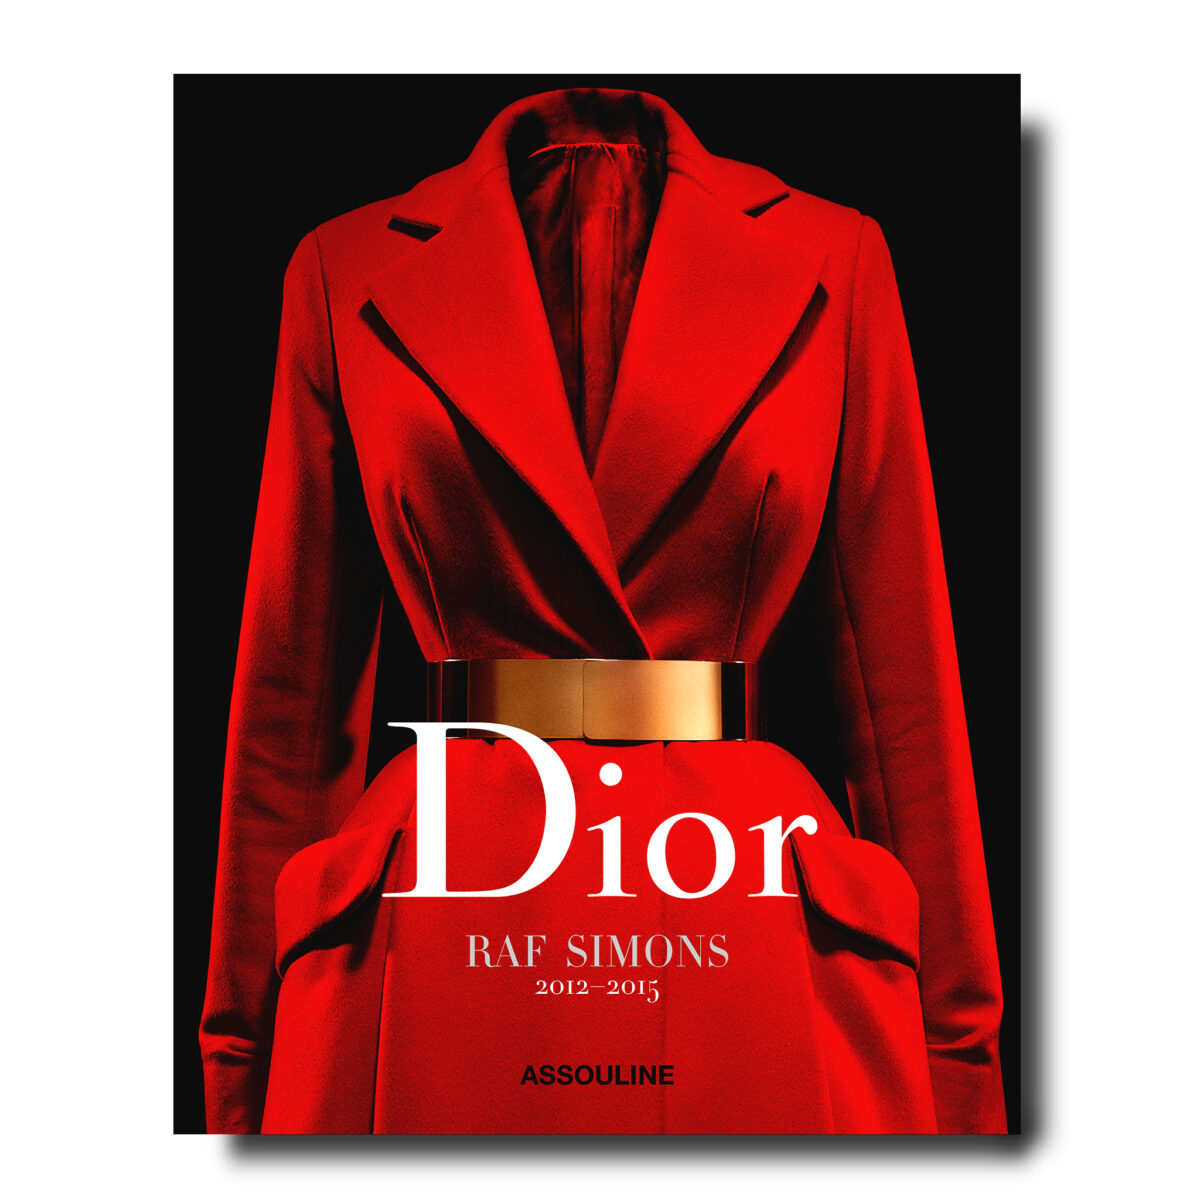 ラフ・シモンズのクリエイティビティに着目した書籍『Dior by Raf Simons』